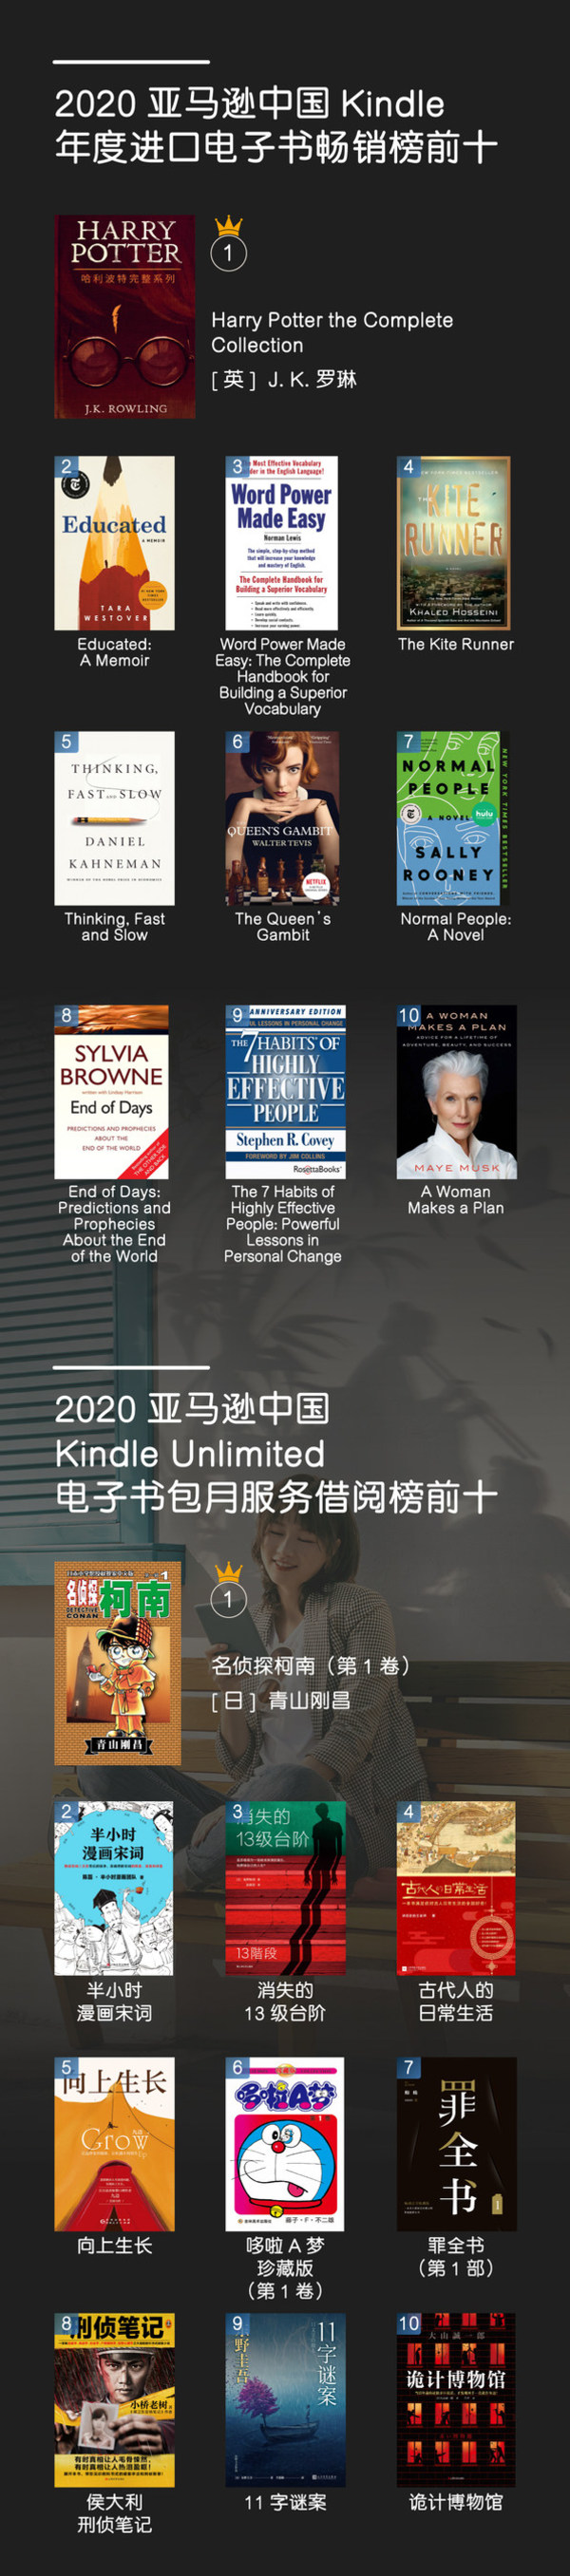 亚马逊中国发布年度Kindle阅读榜单，权威解读2020年中国读者数字阅读趋势与特征。